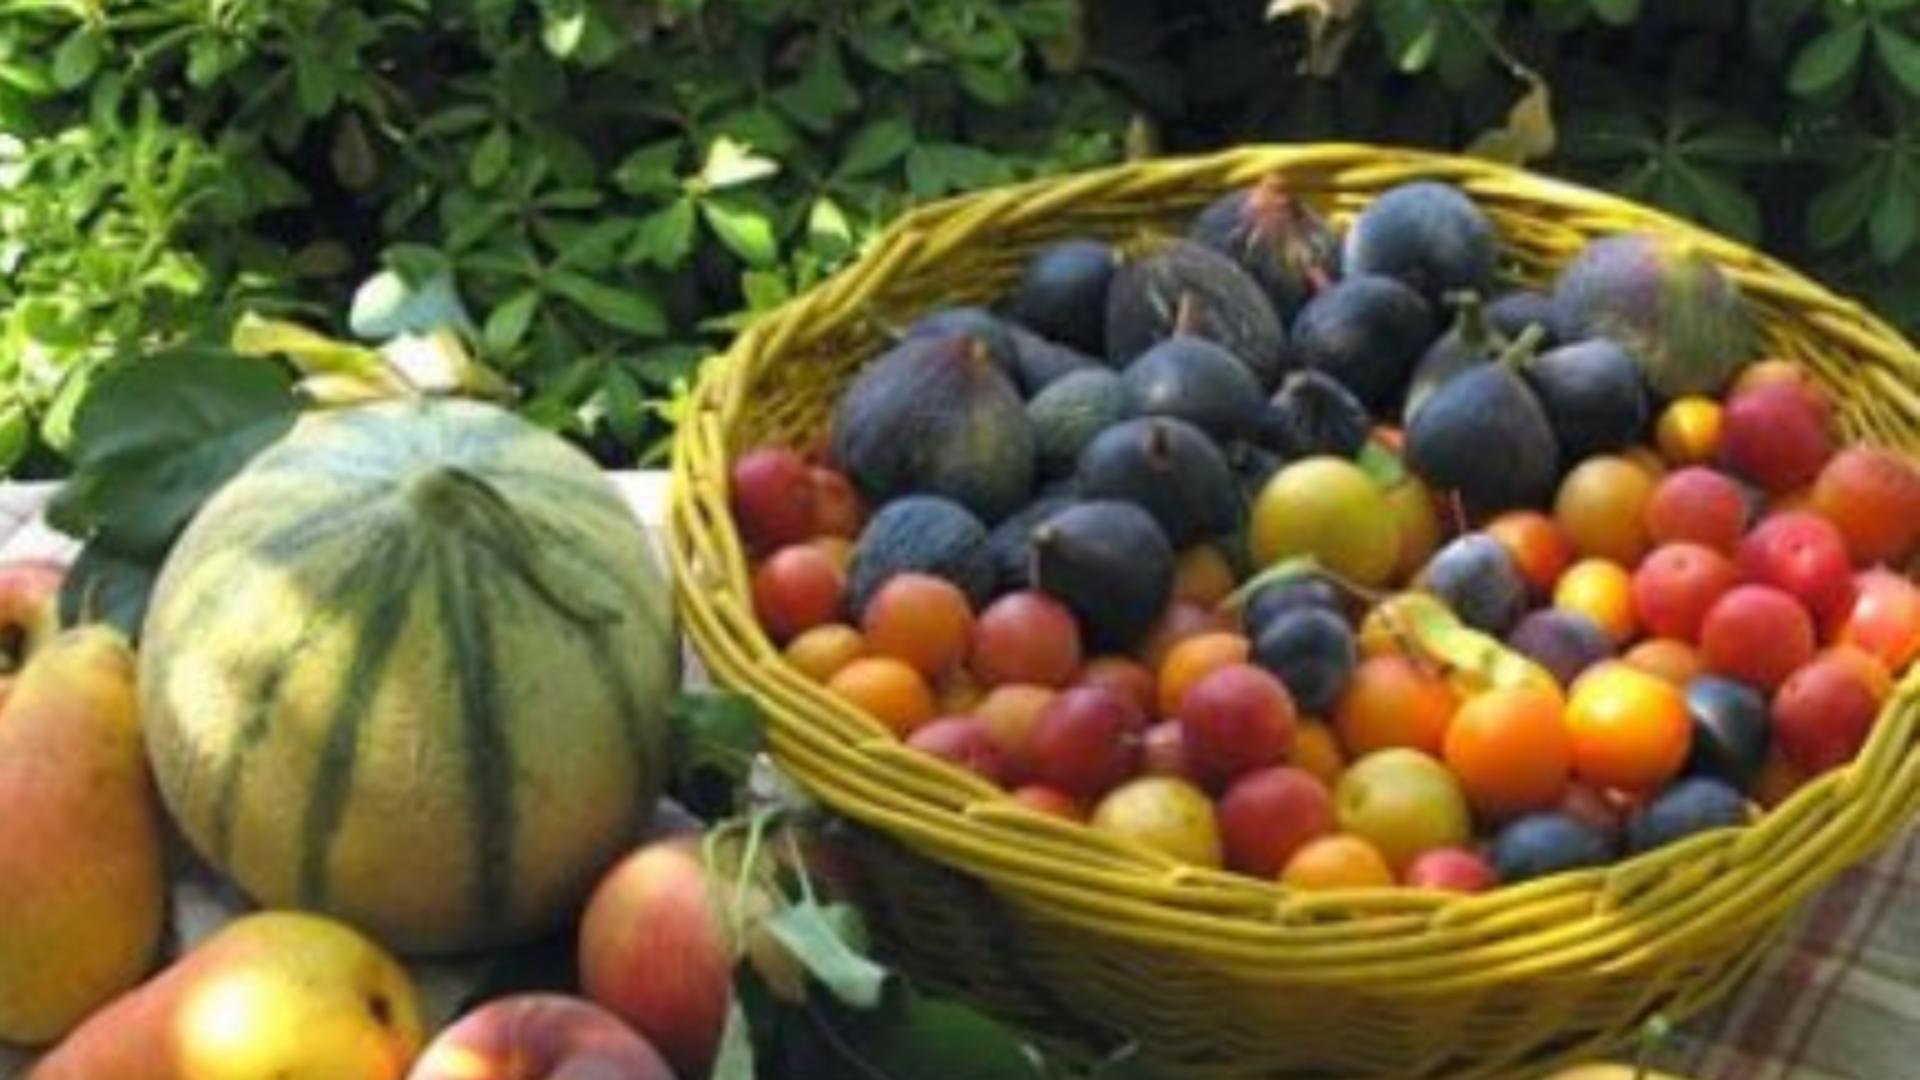 Cum pierzi kilogramele în plus cu 10 fructe şi legume de toamnă - Trebuie să renunți la 2 produse periculoase pentru sănătate